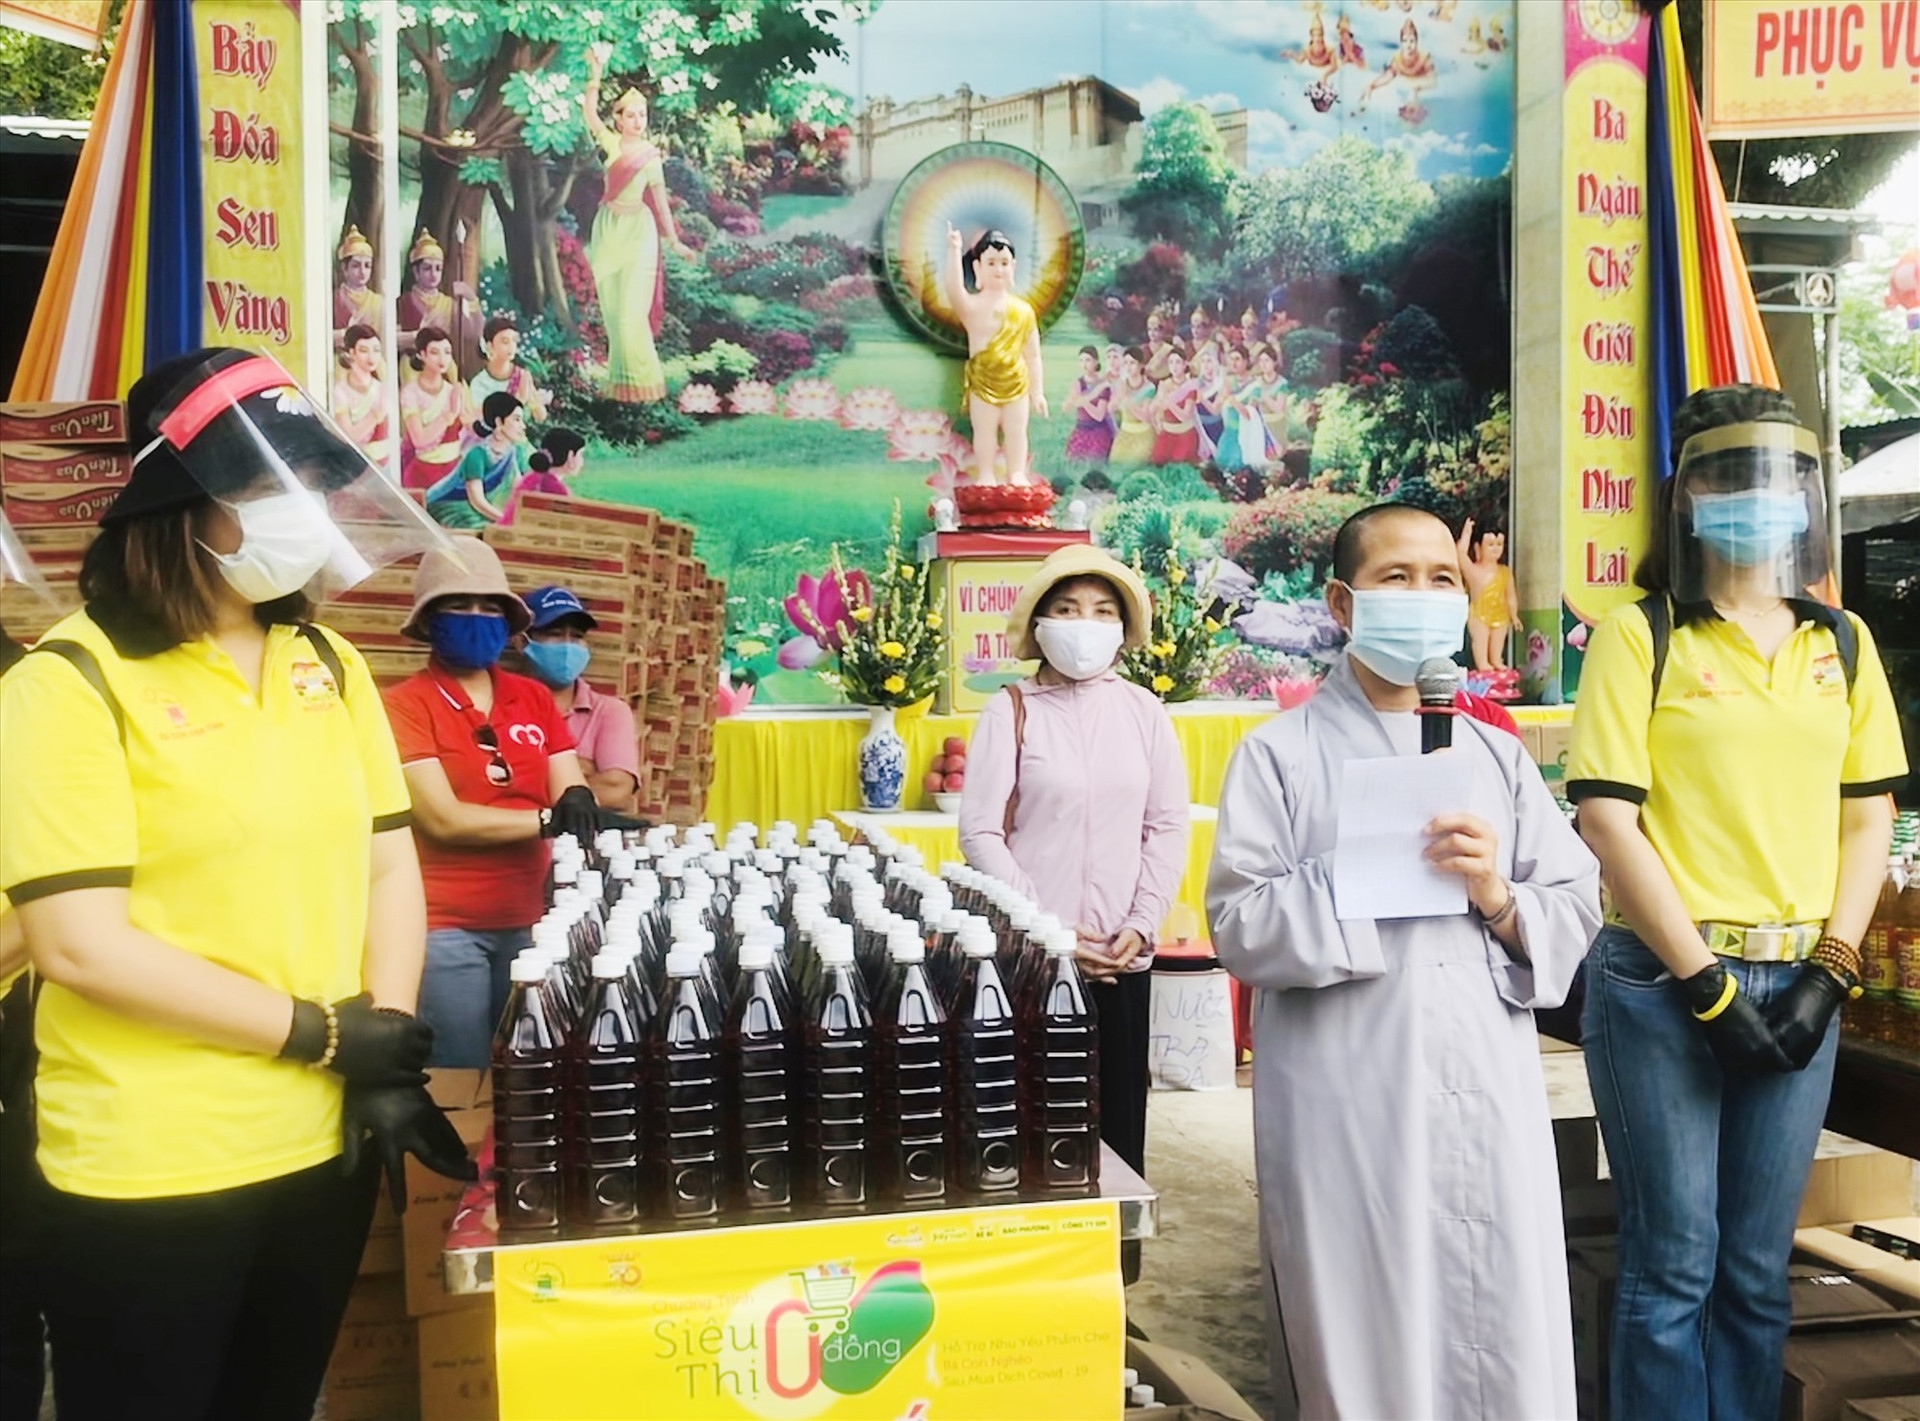 “Siêu thị 0 đồng” tổ chức tại chùa Phú Quang (Tam Phú, Tam Kỳ). Ảnh: C.N